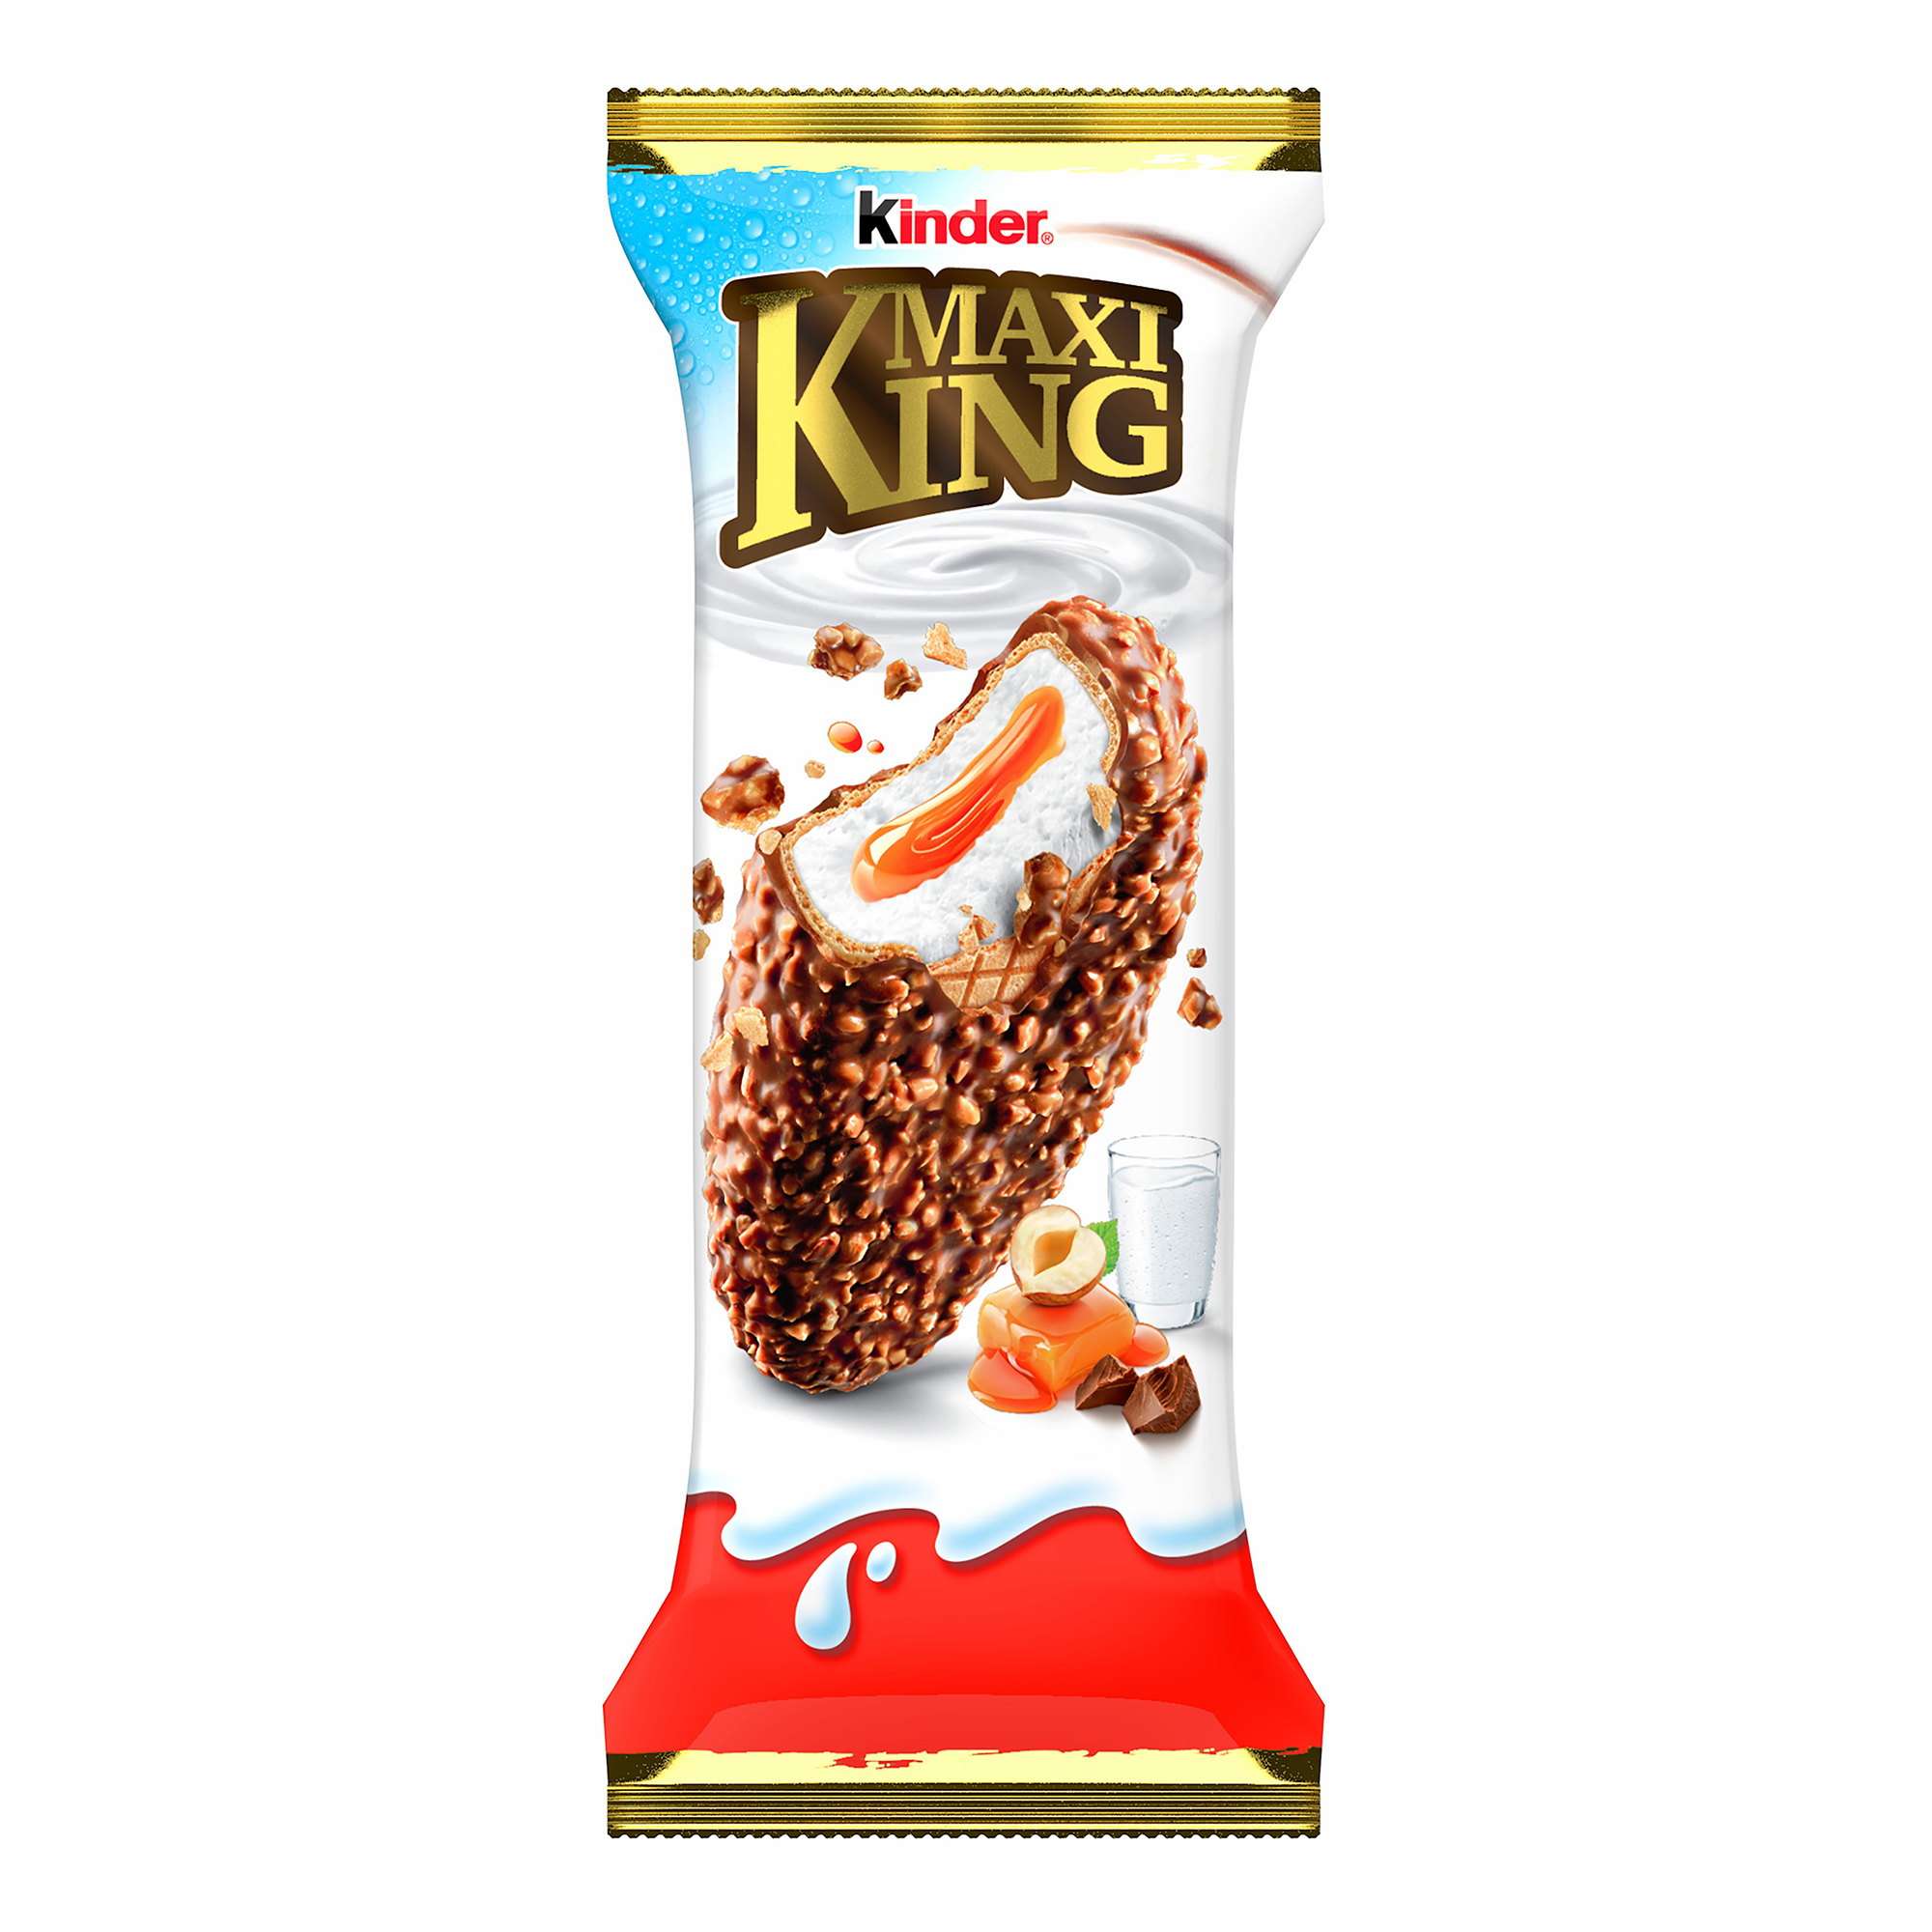 Пирожное Kinder Maxi King молочным шоколадом и орехами с молочно-карамельной начинкой 35г